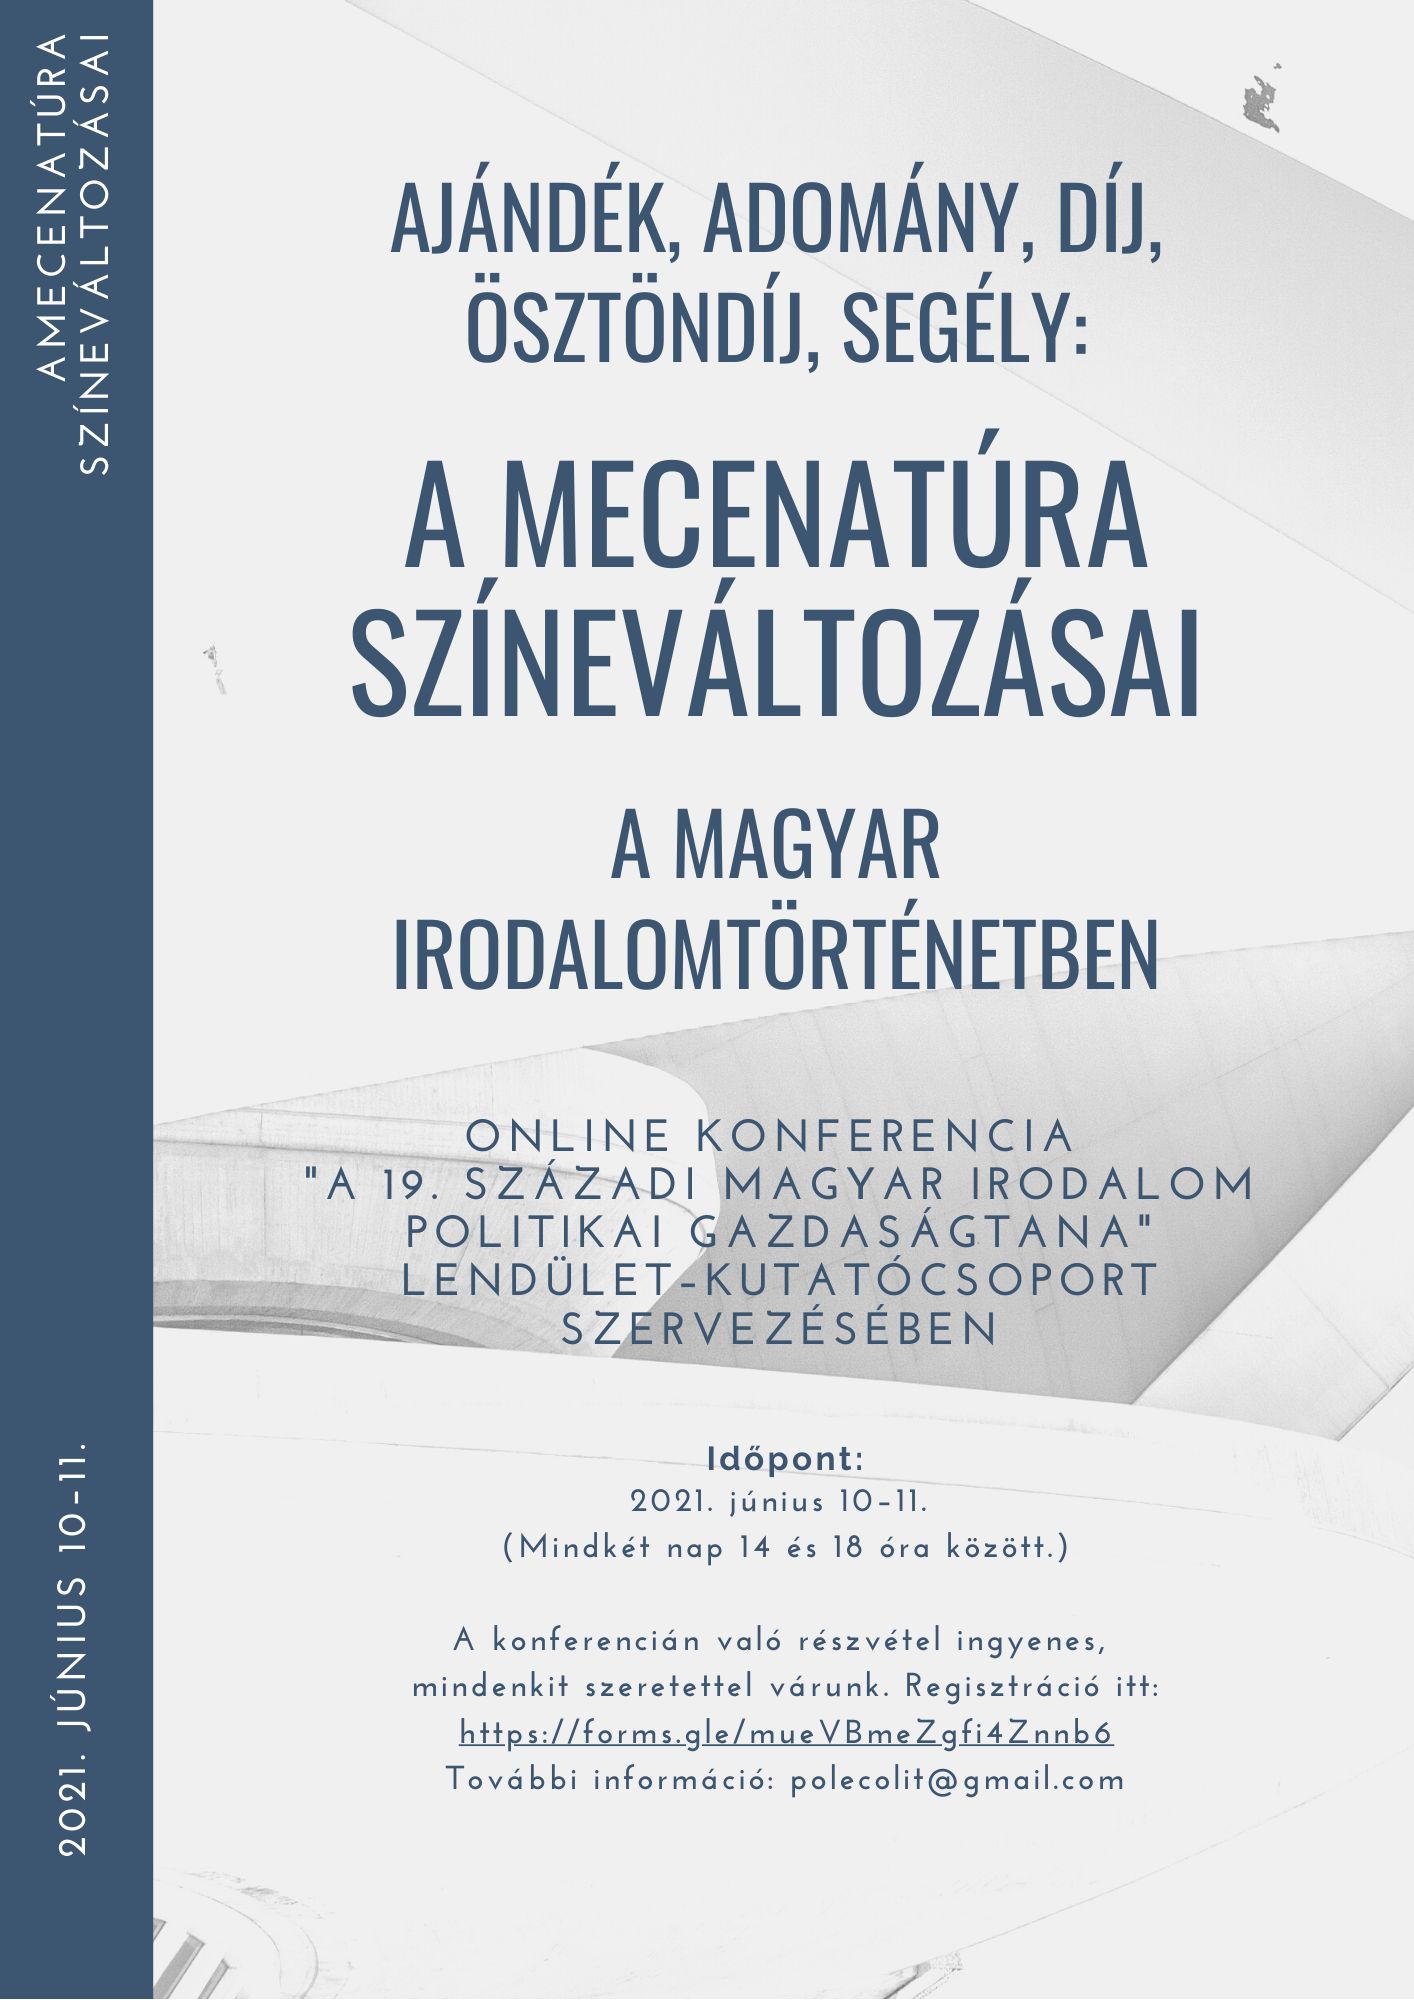 A mecenatúra színeváltozásai a magyar irodalomtörténetben – online konferencia